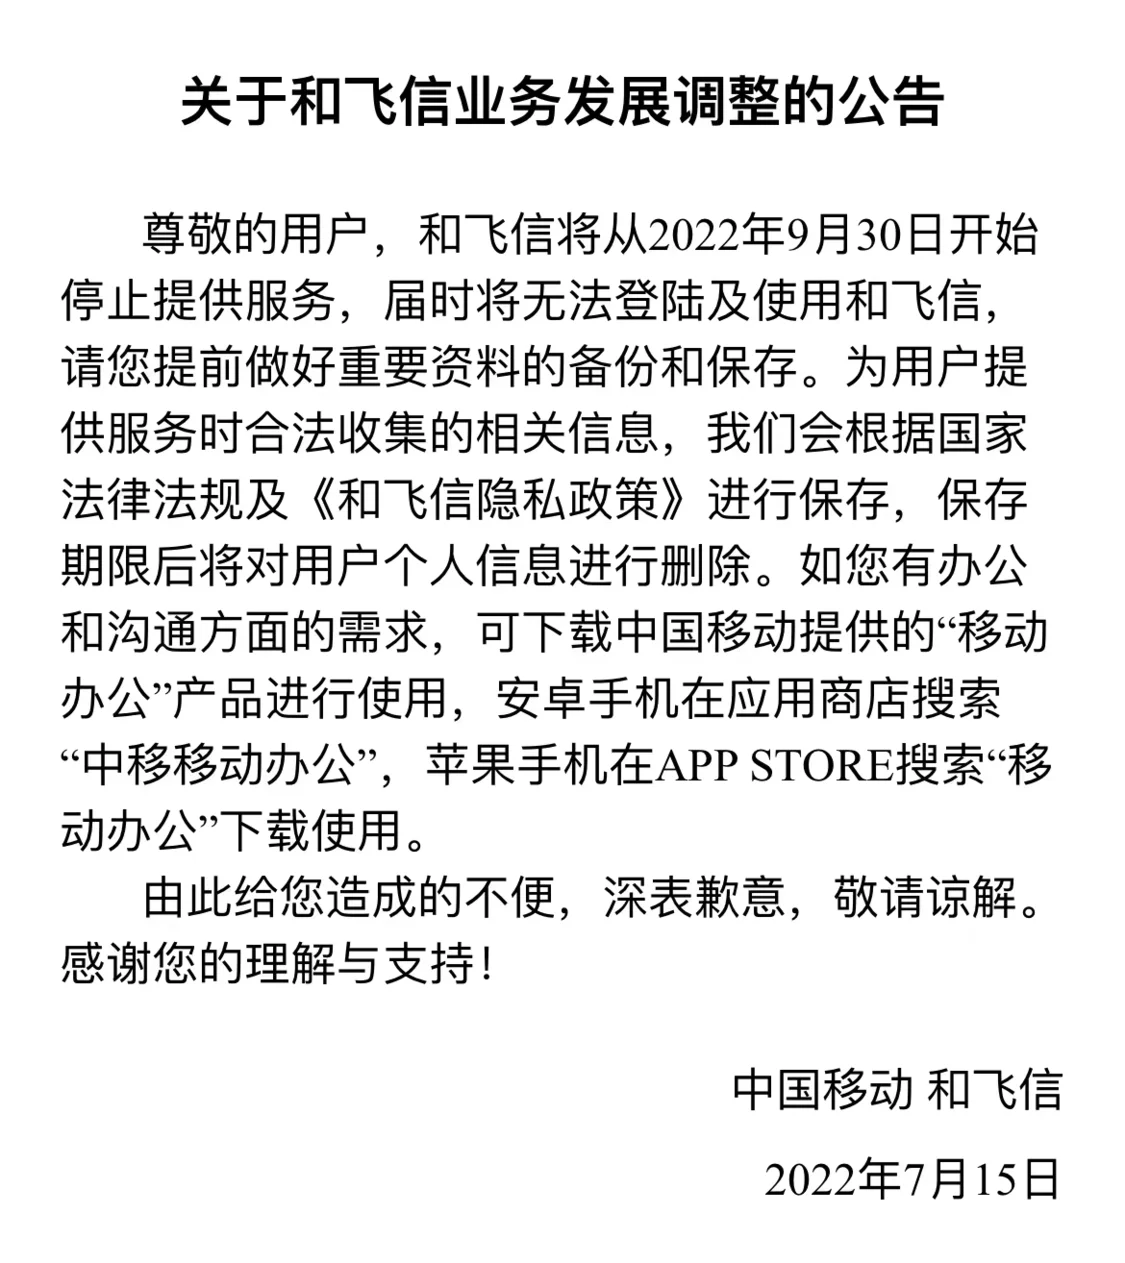 中国移动宣布飞信停止服务